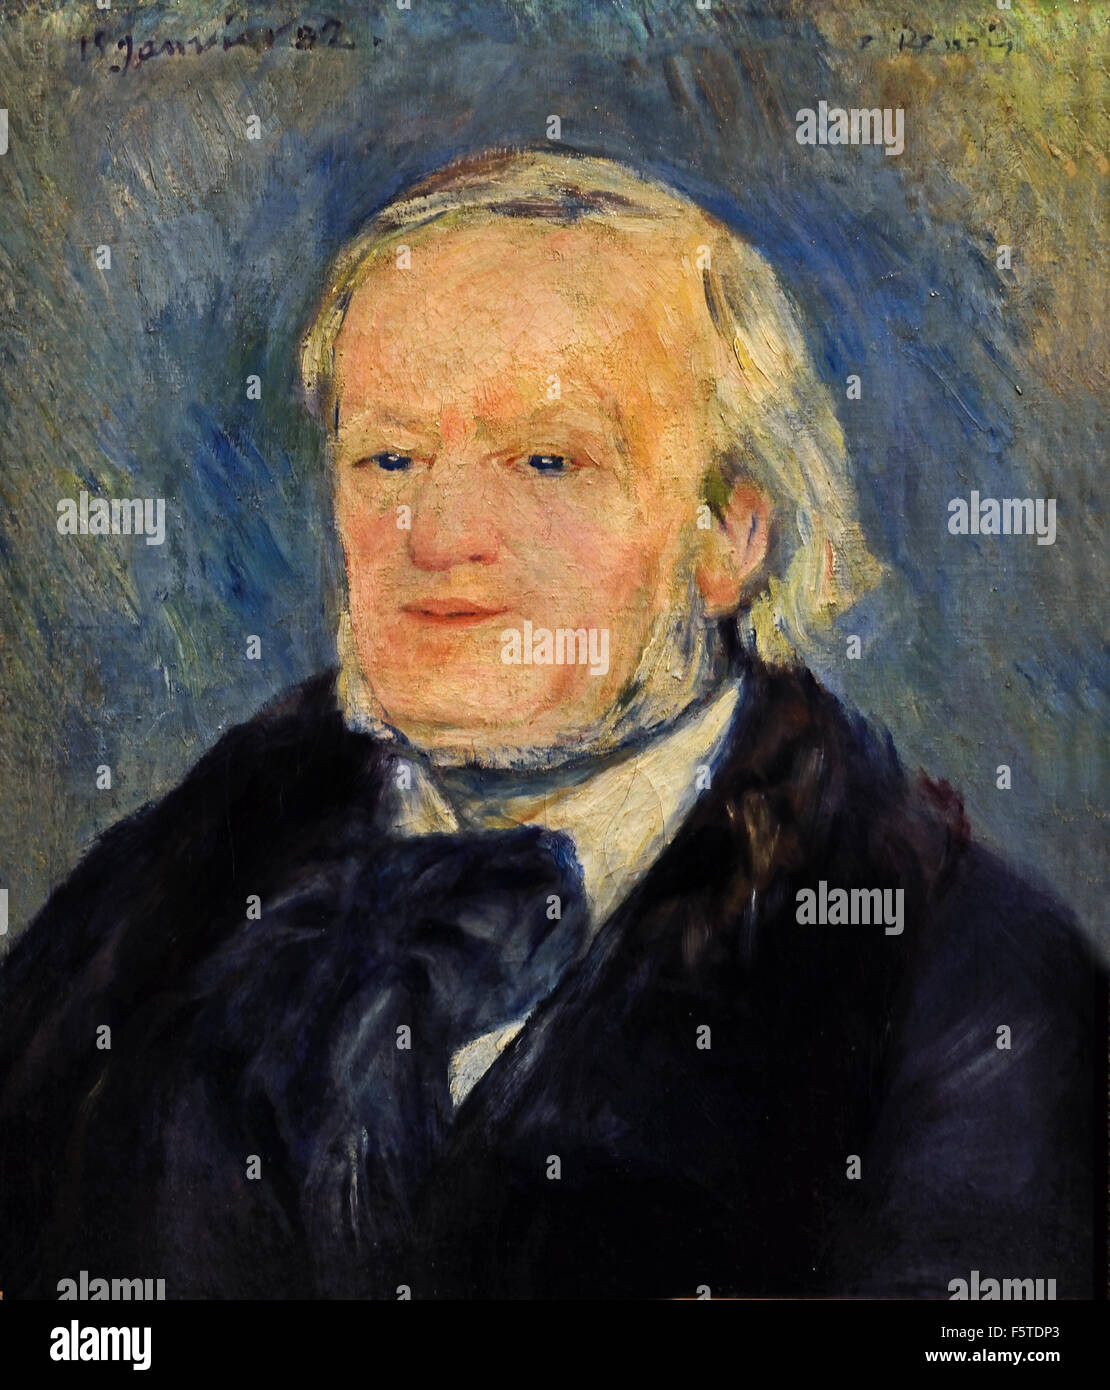 Richard Wagner 1882 Pierre Auguste Renoir 1841-1919 Französisch impressionistischen Frankreich (Wilhelm Richard Wagner 1813-1883, deutscher Komponist Oper Konzertmusik) Stockfoto